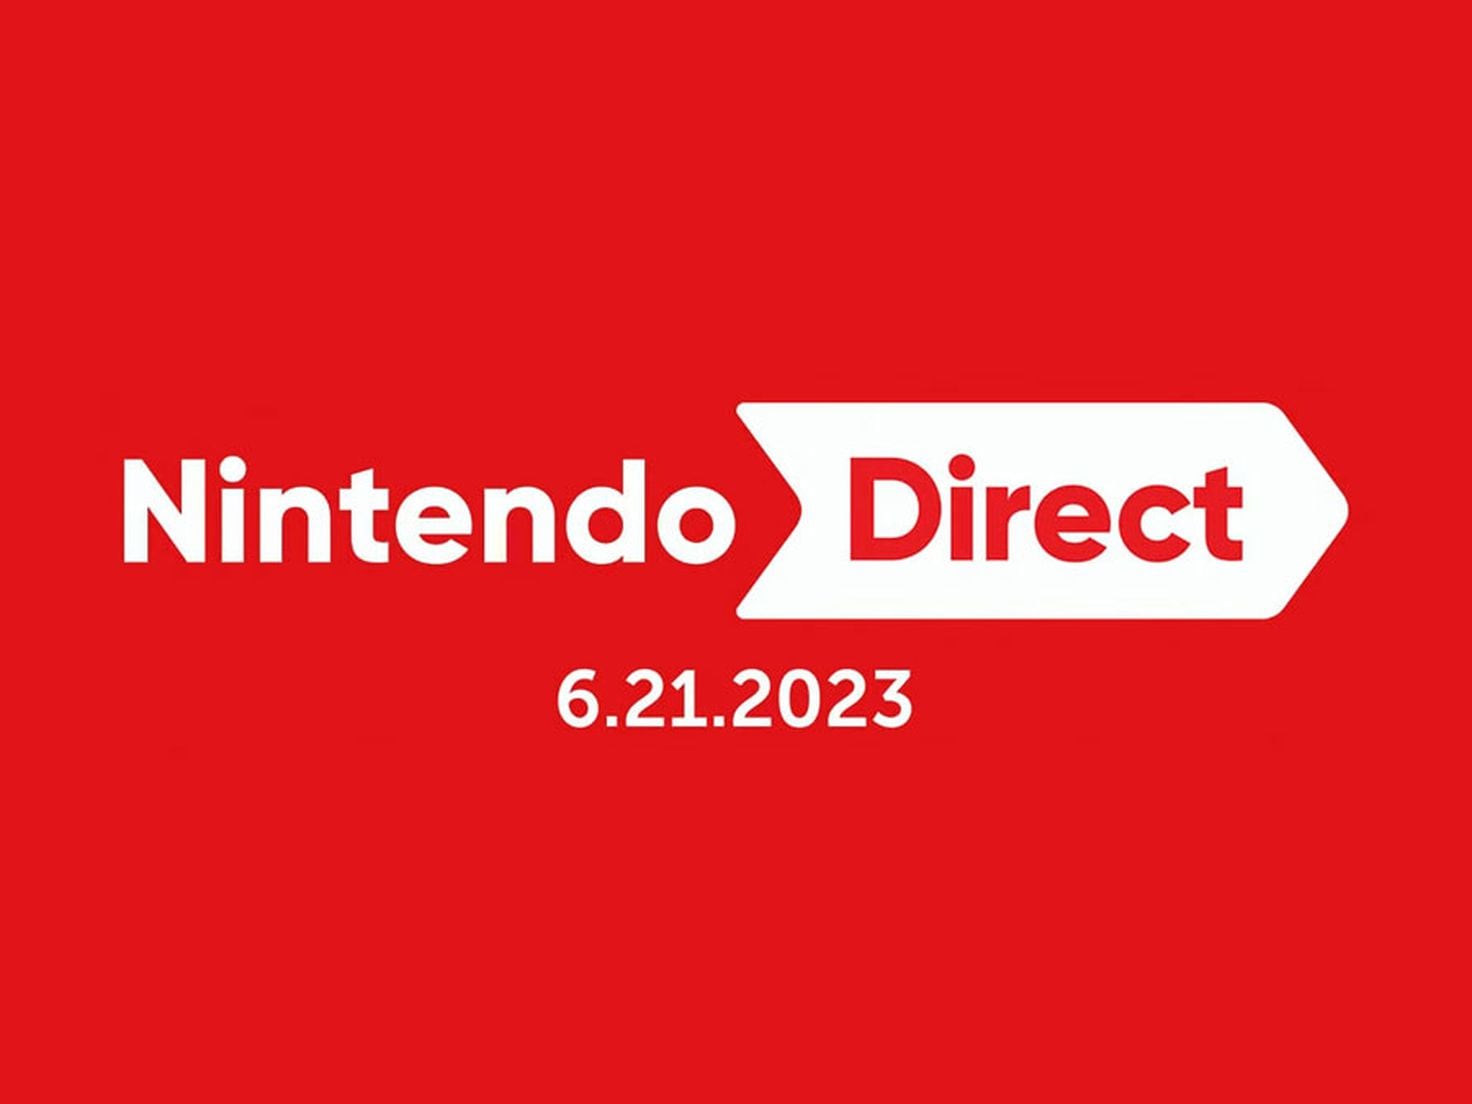 Persona 5 Tactica - Nintendo Direct 6.21.2023 